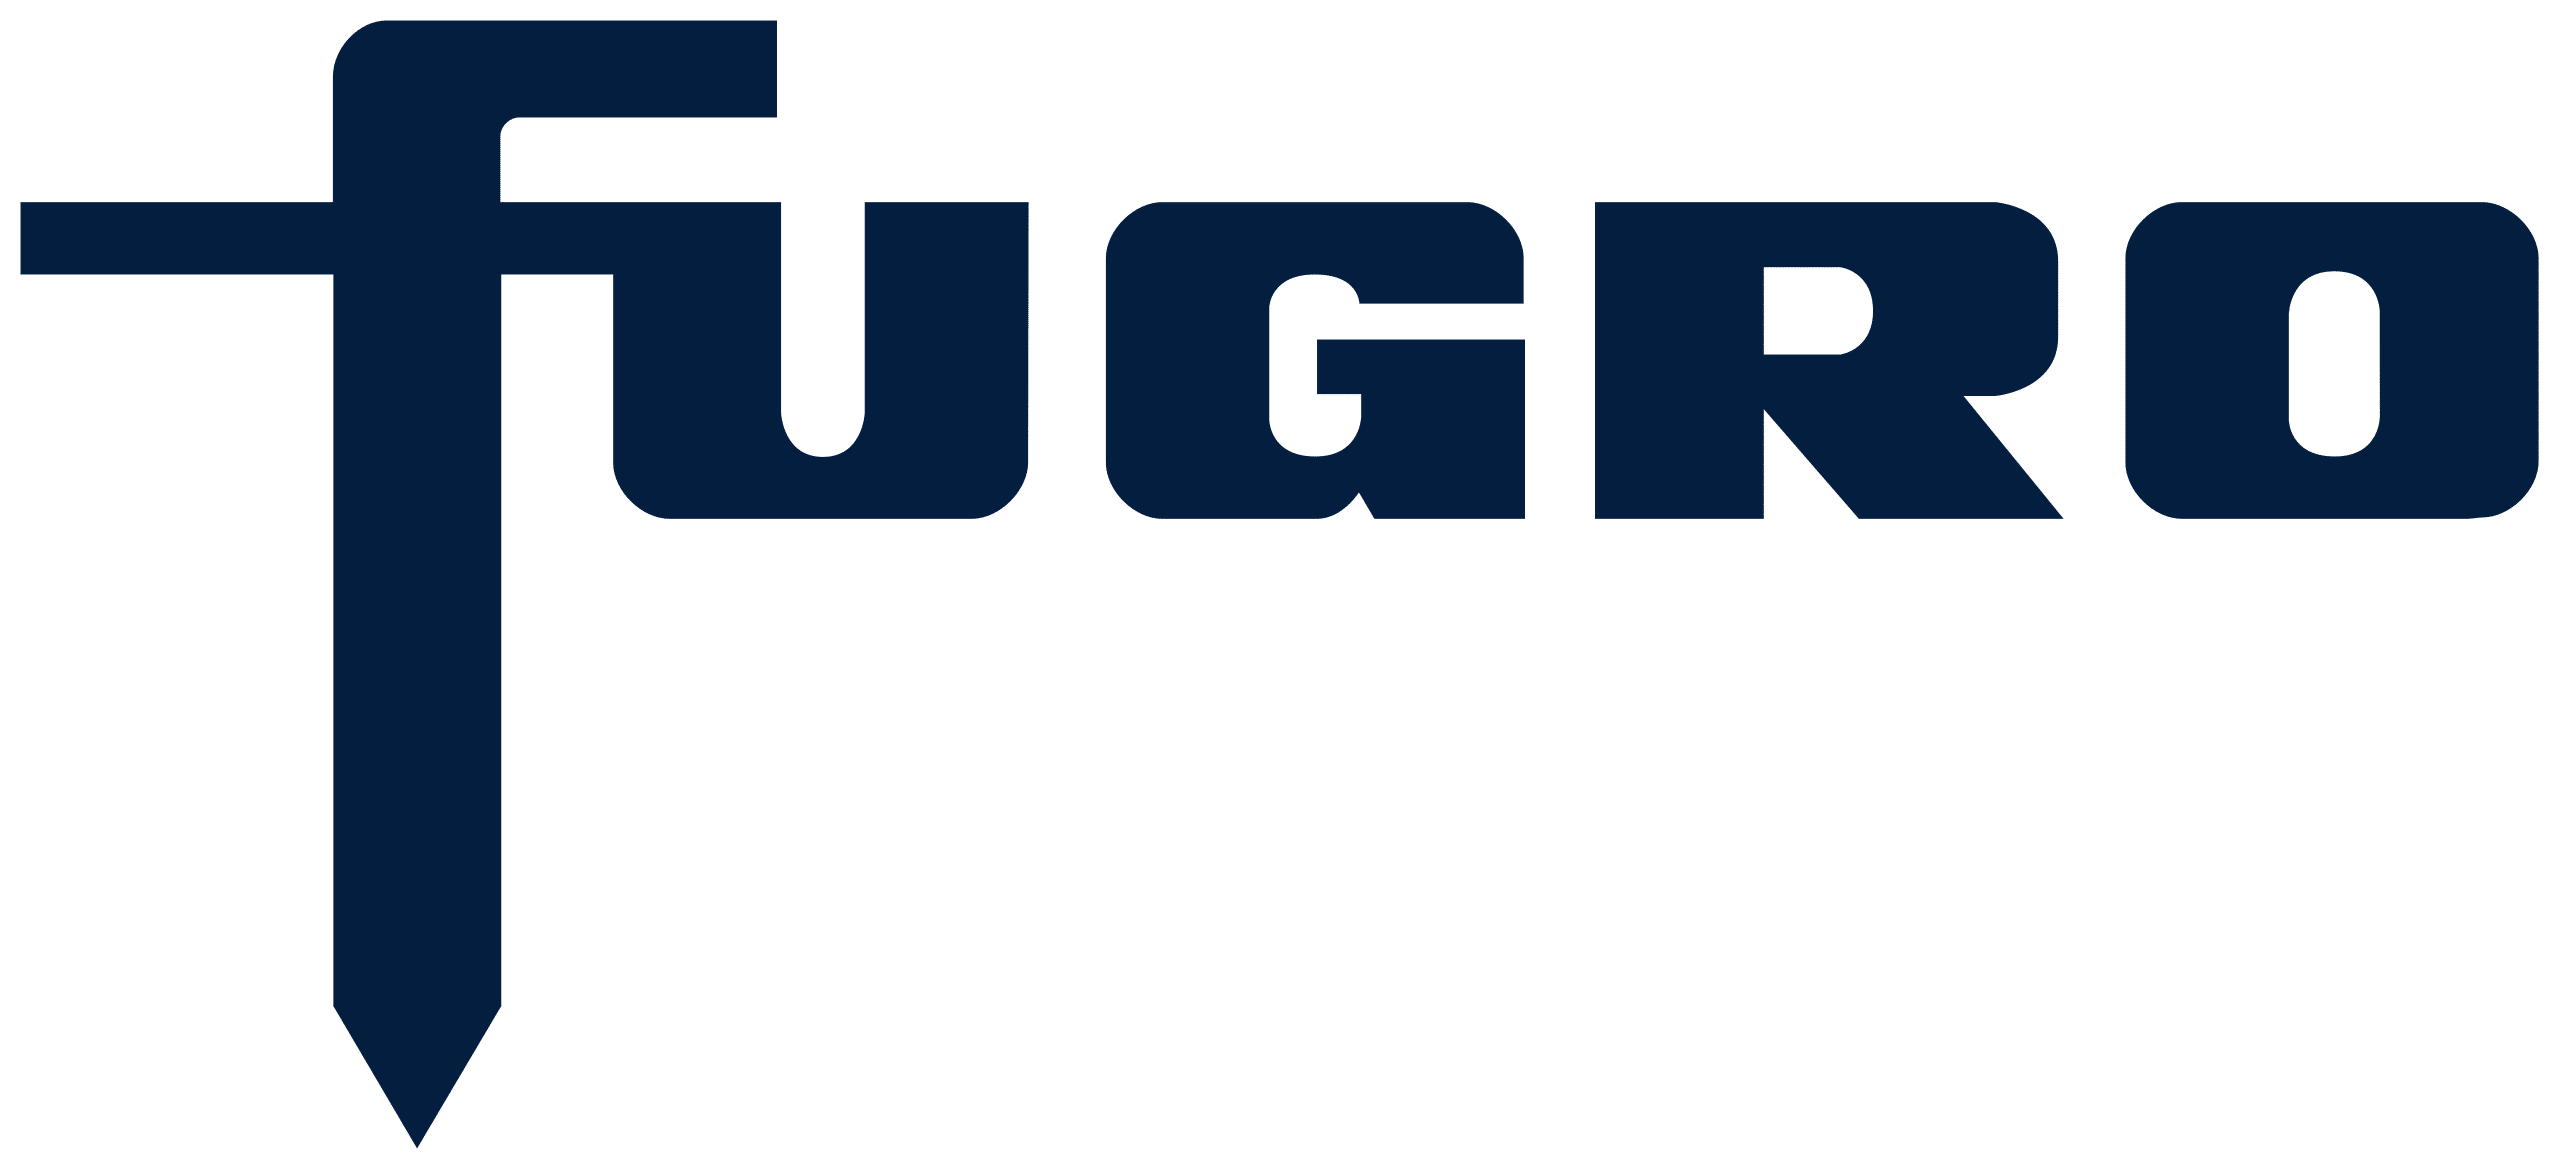 2560px-Fugro_logo.svg